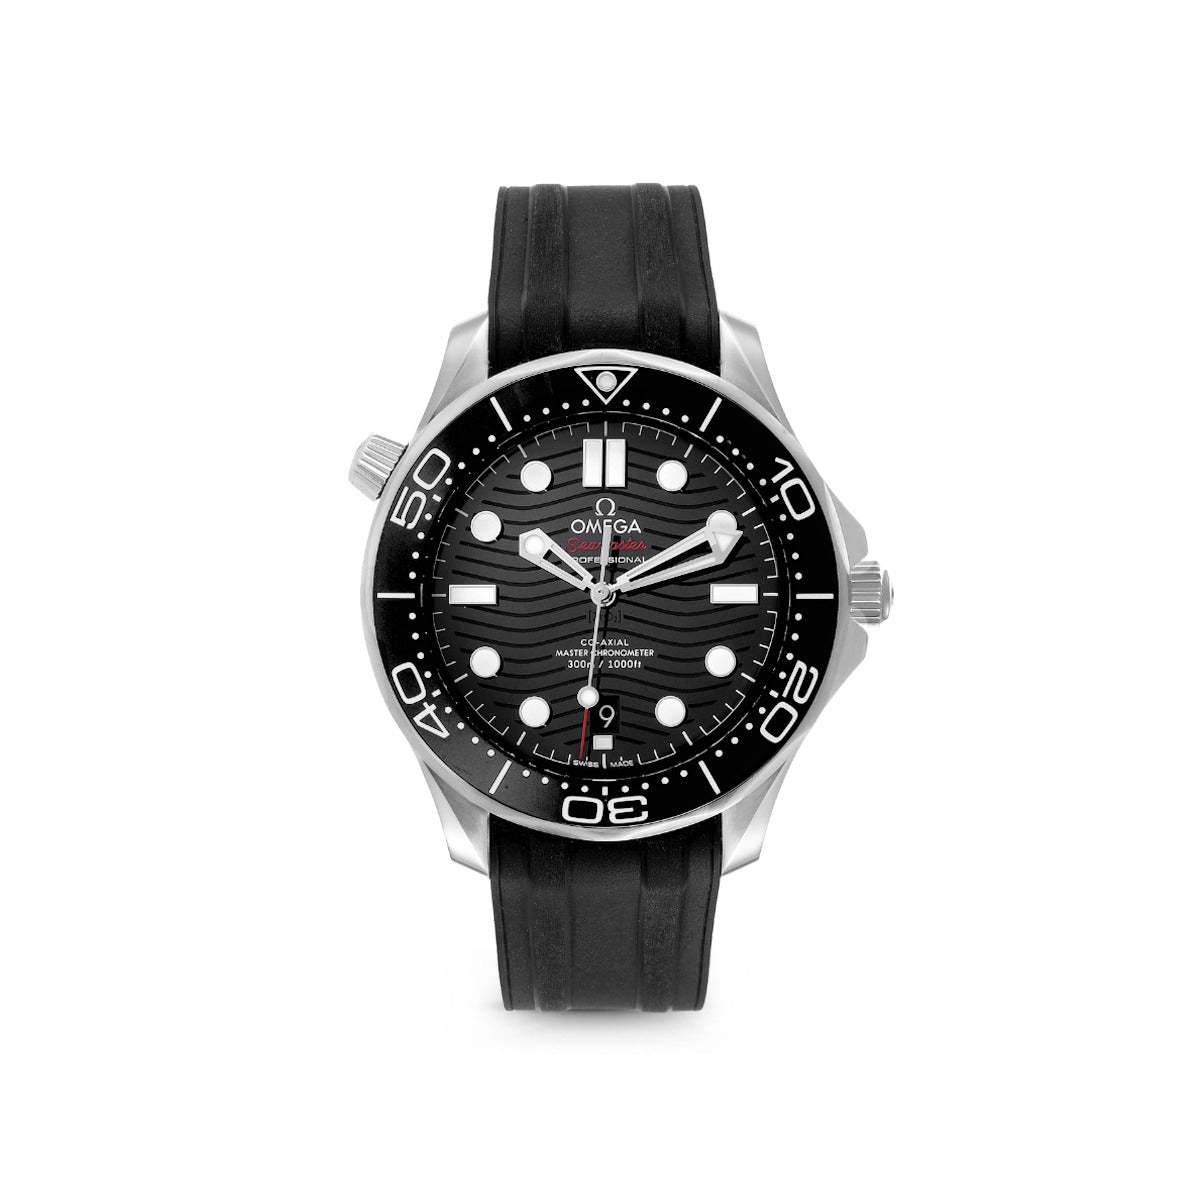 Omega Seamaster Diver 300M Men's Watch Model # 21032422001001